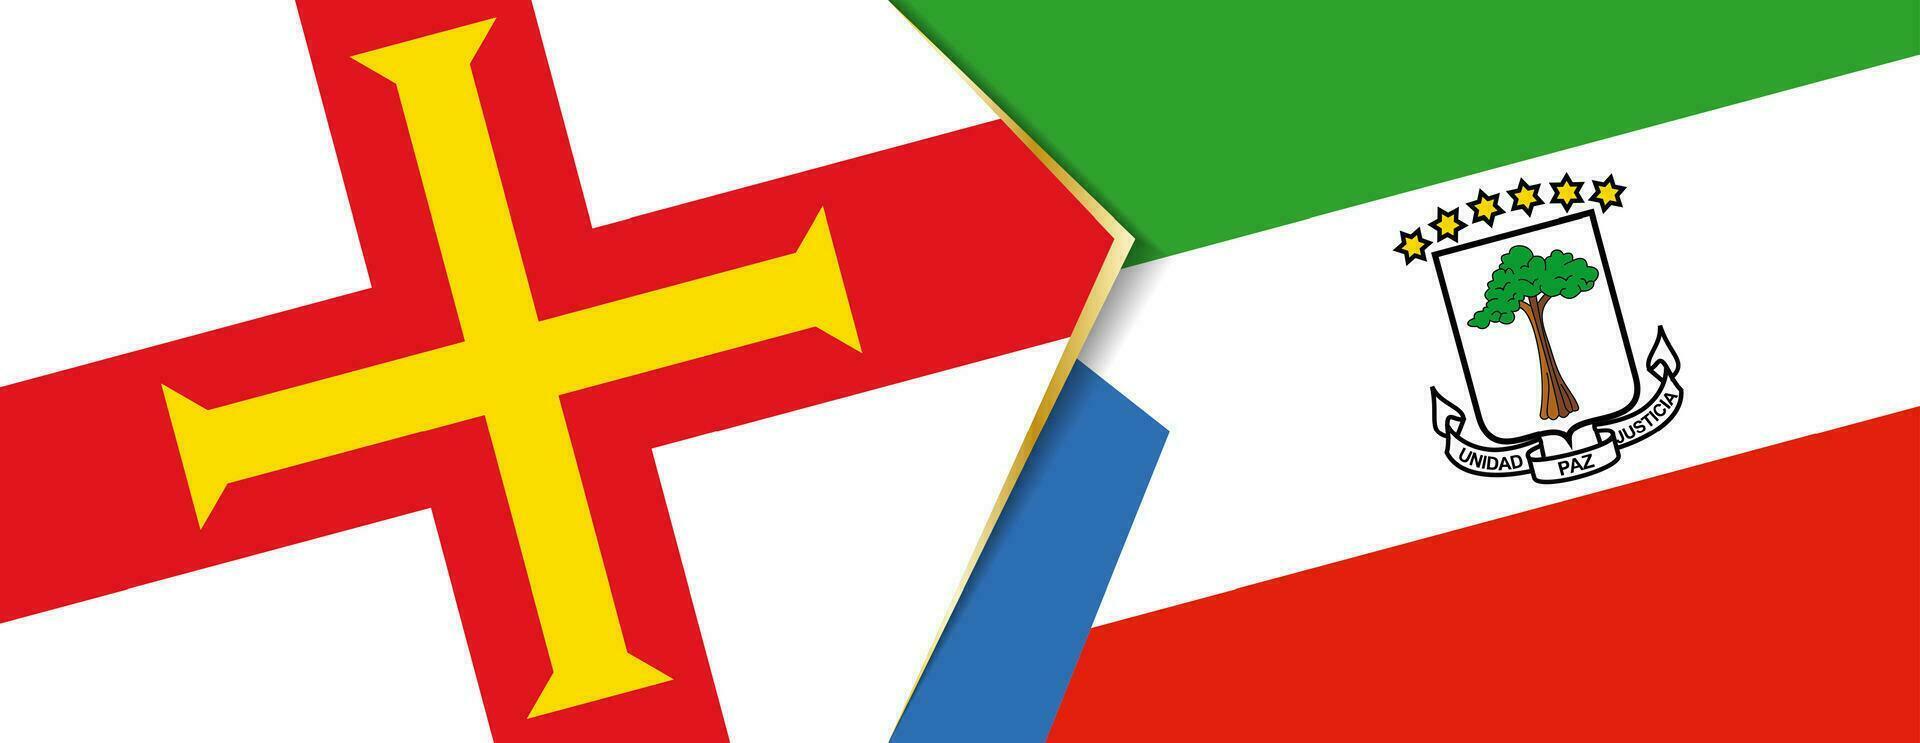 Guernsey und äquatorial Guinea Flaggen, zwei Vektor Flaggen.